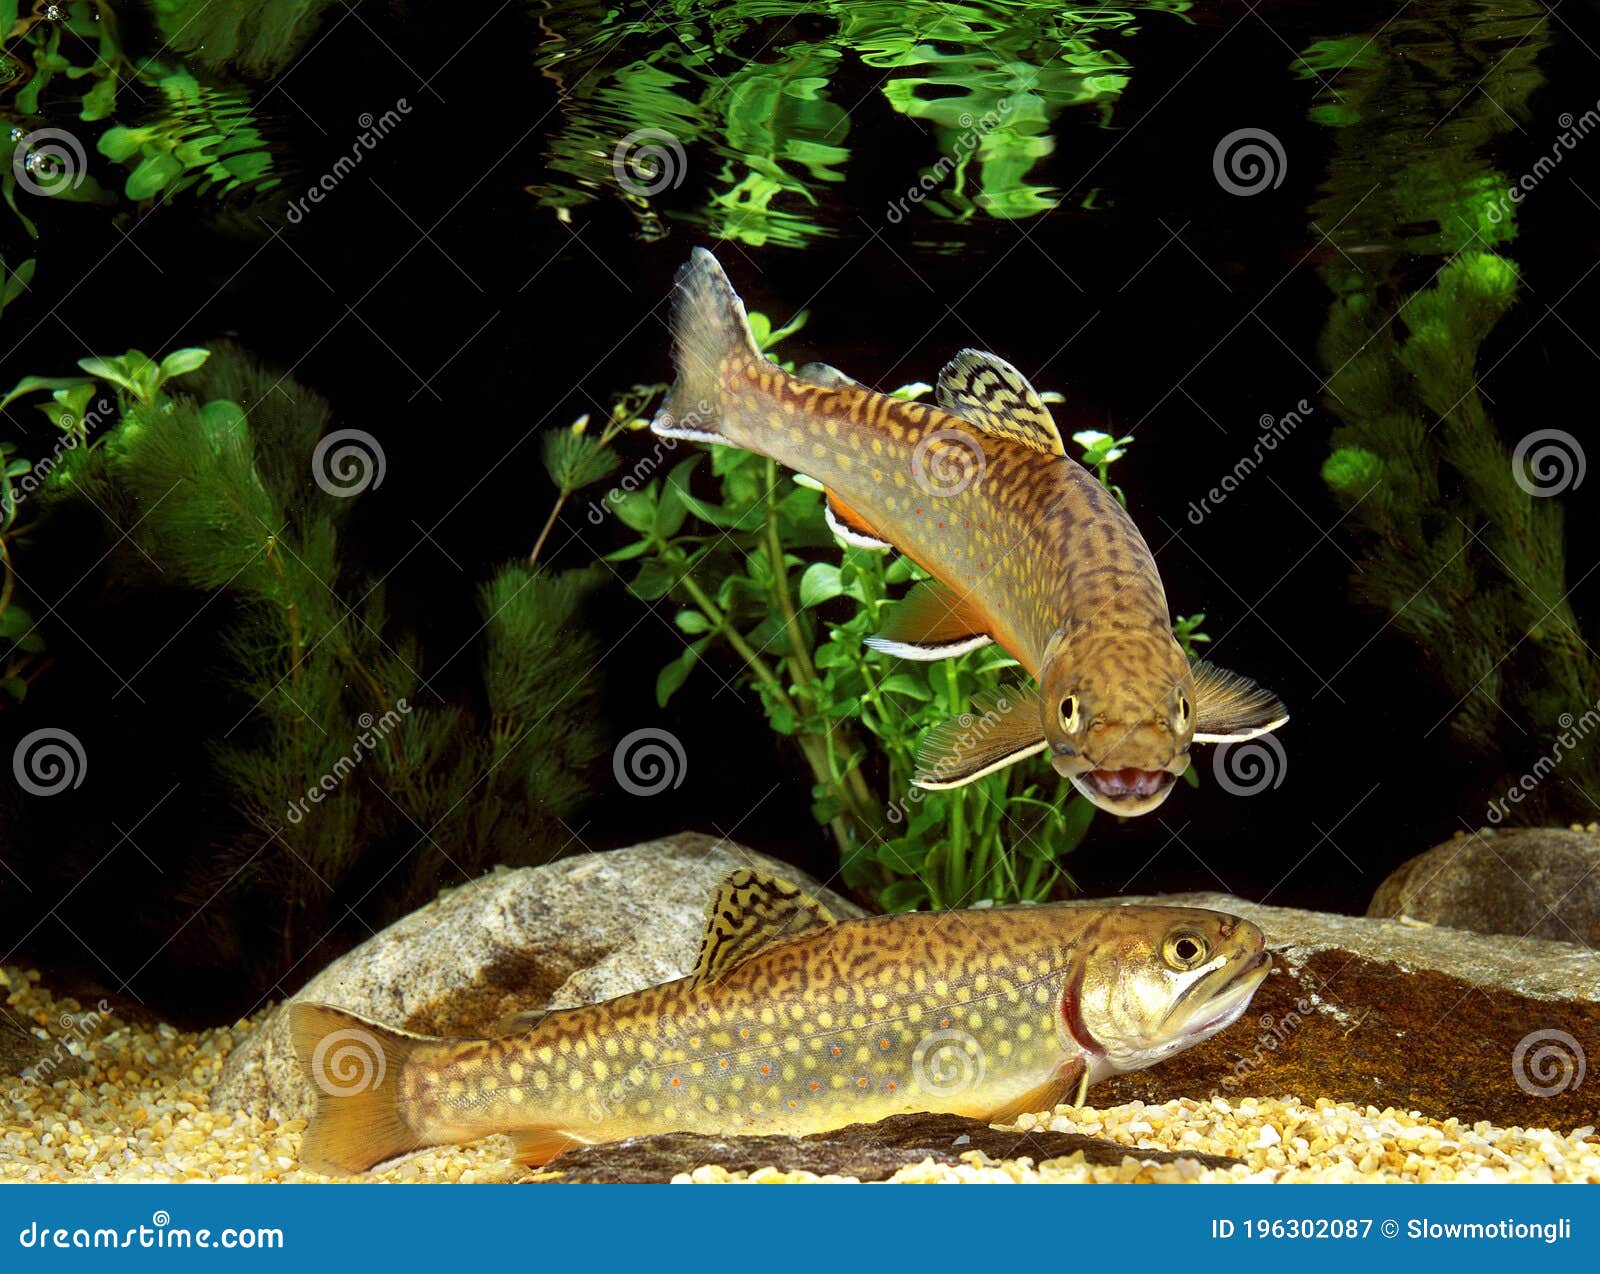 brook trout, salvelinus fontinalis, adults